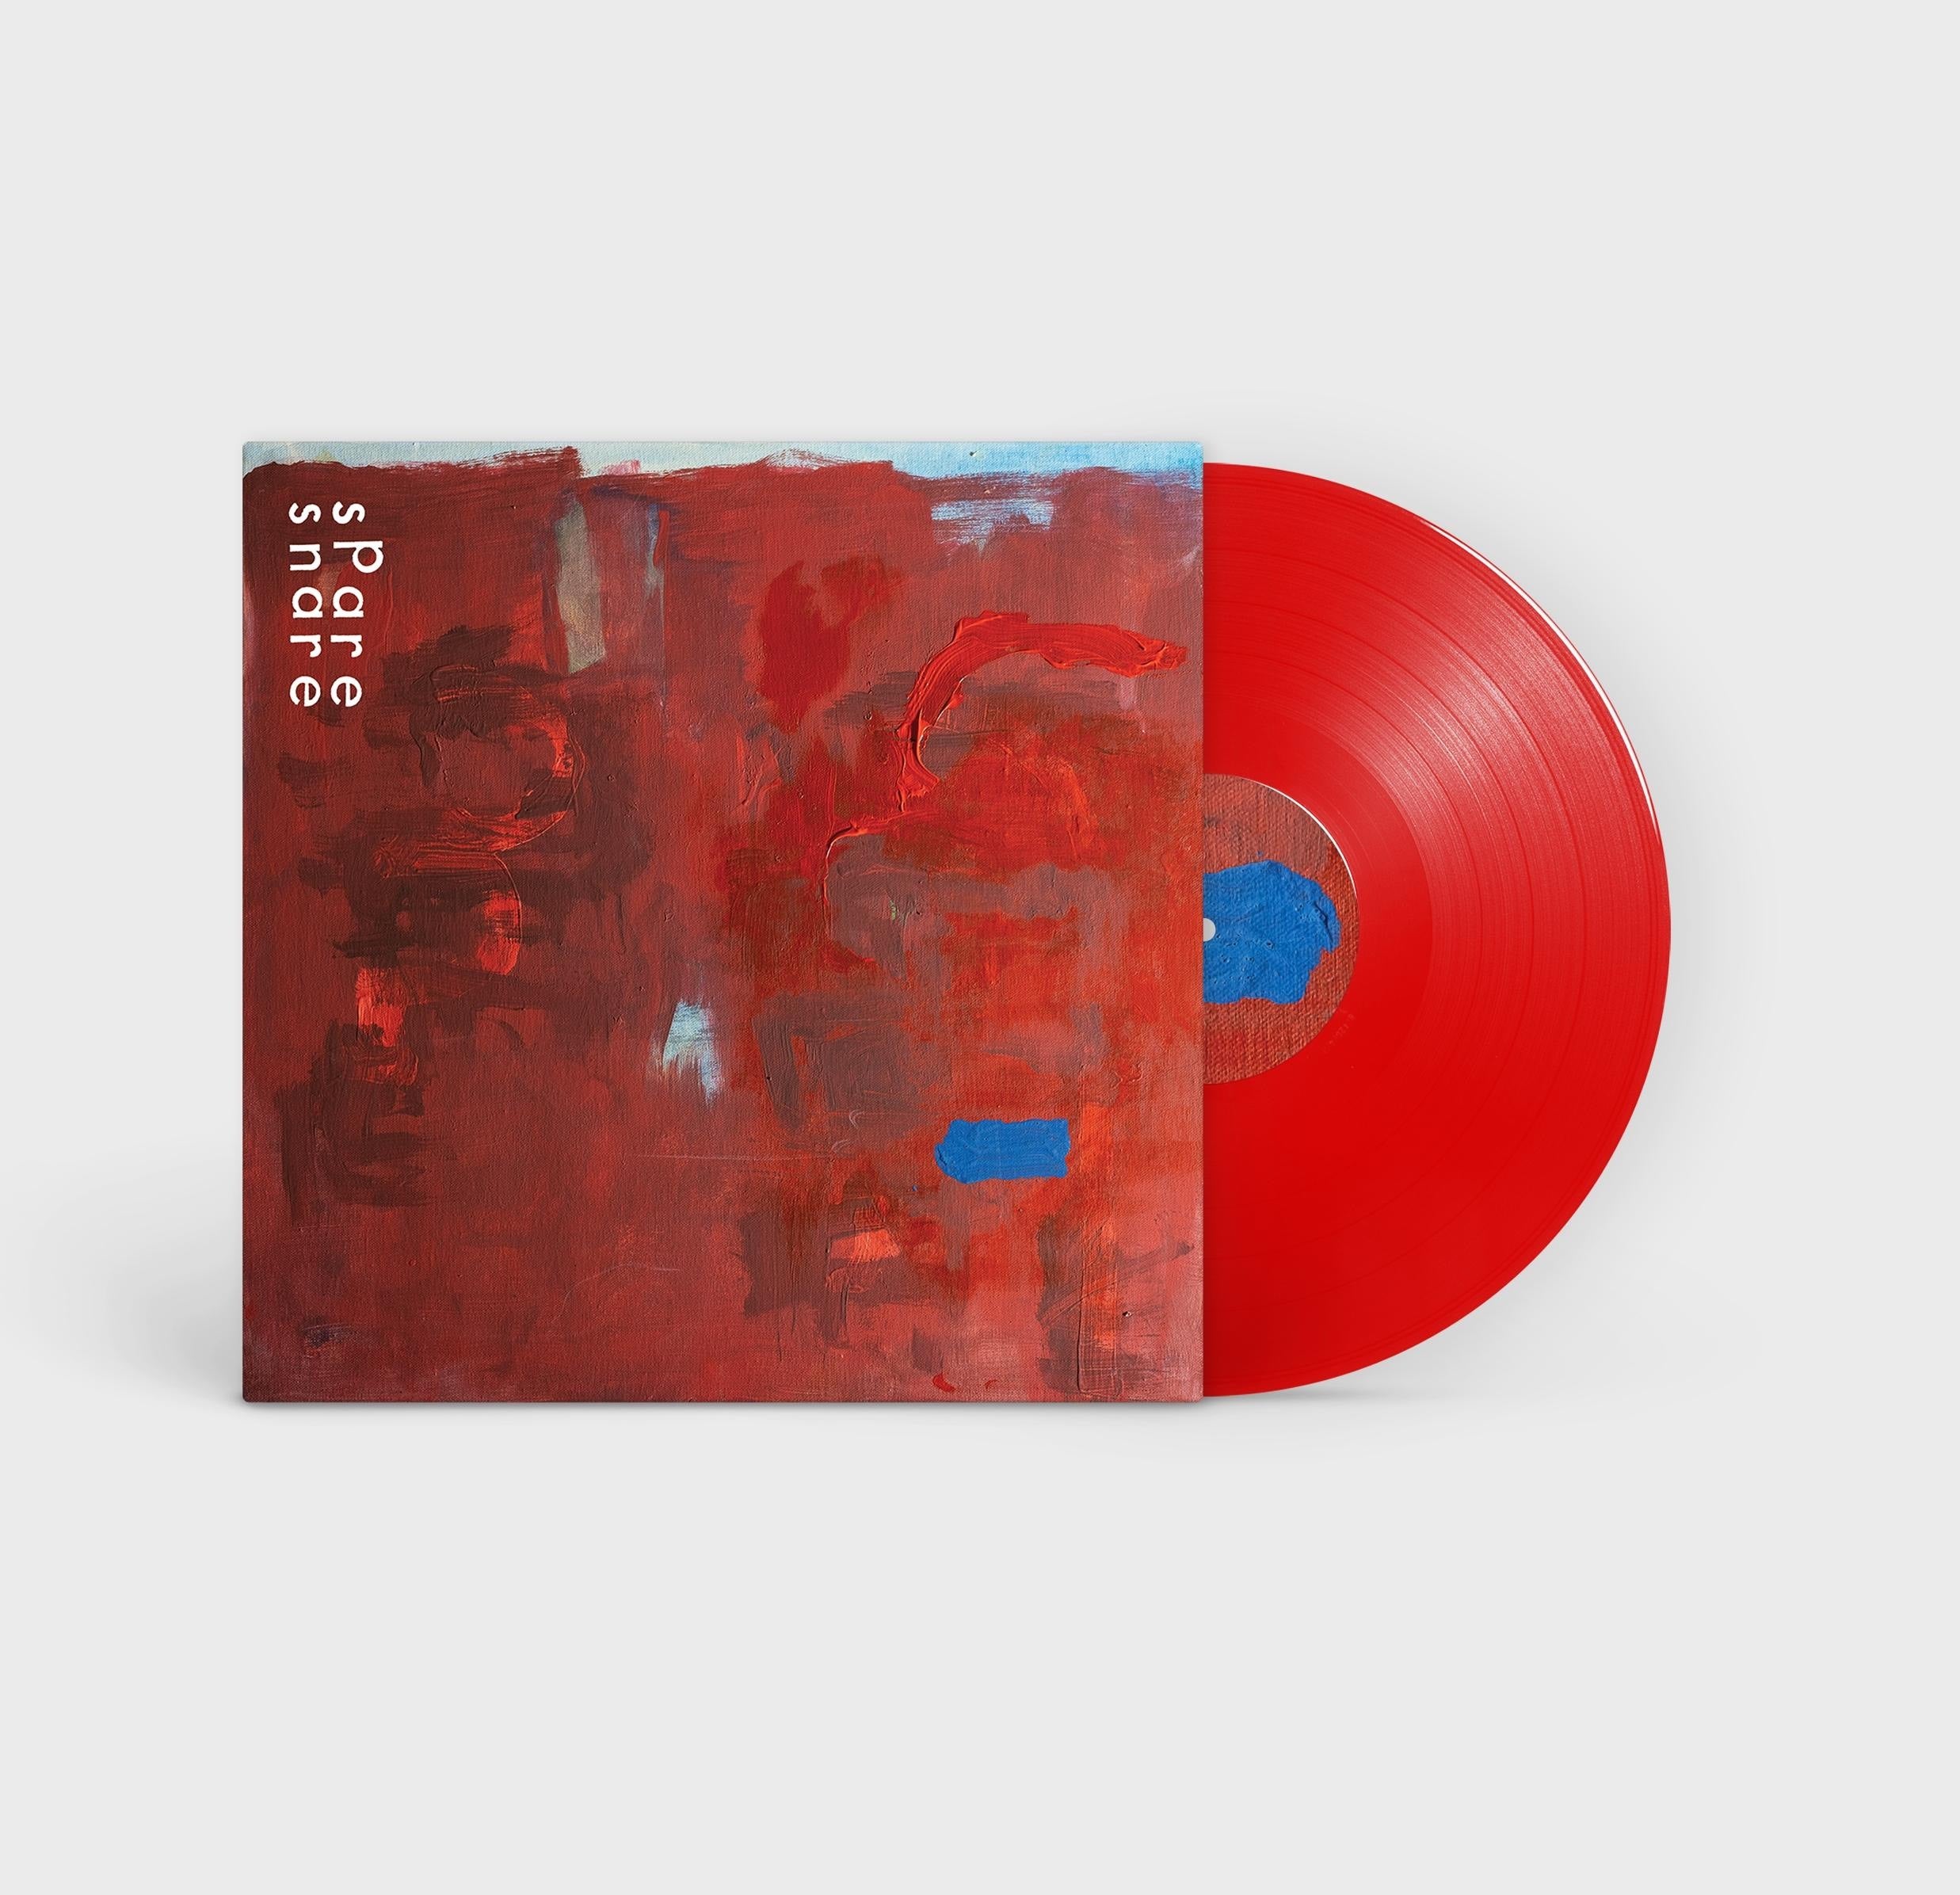 Spare Snare - The Brutal: Transparent Red Vinyl LP